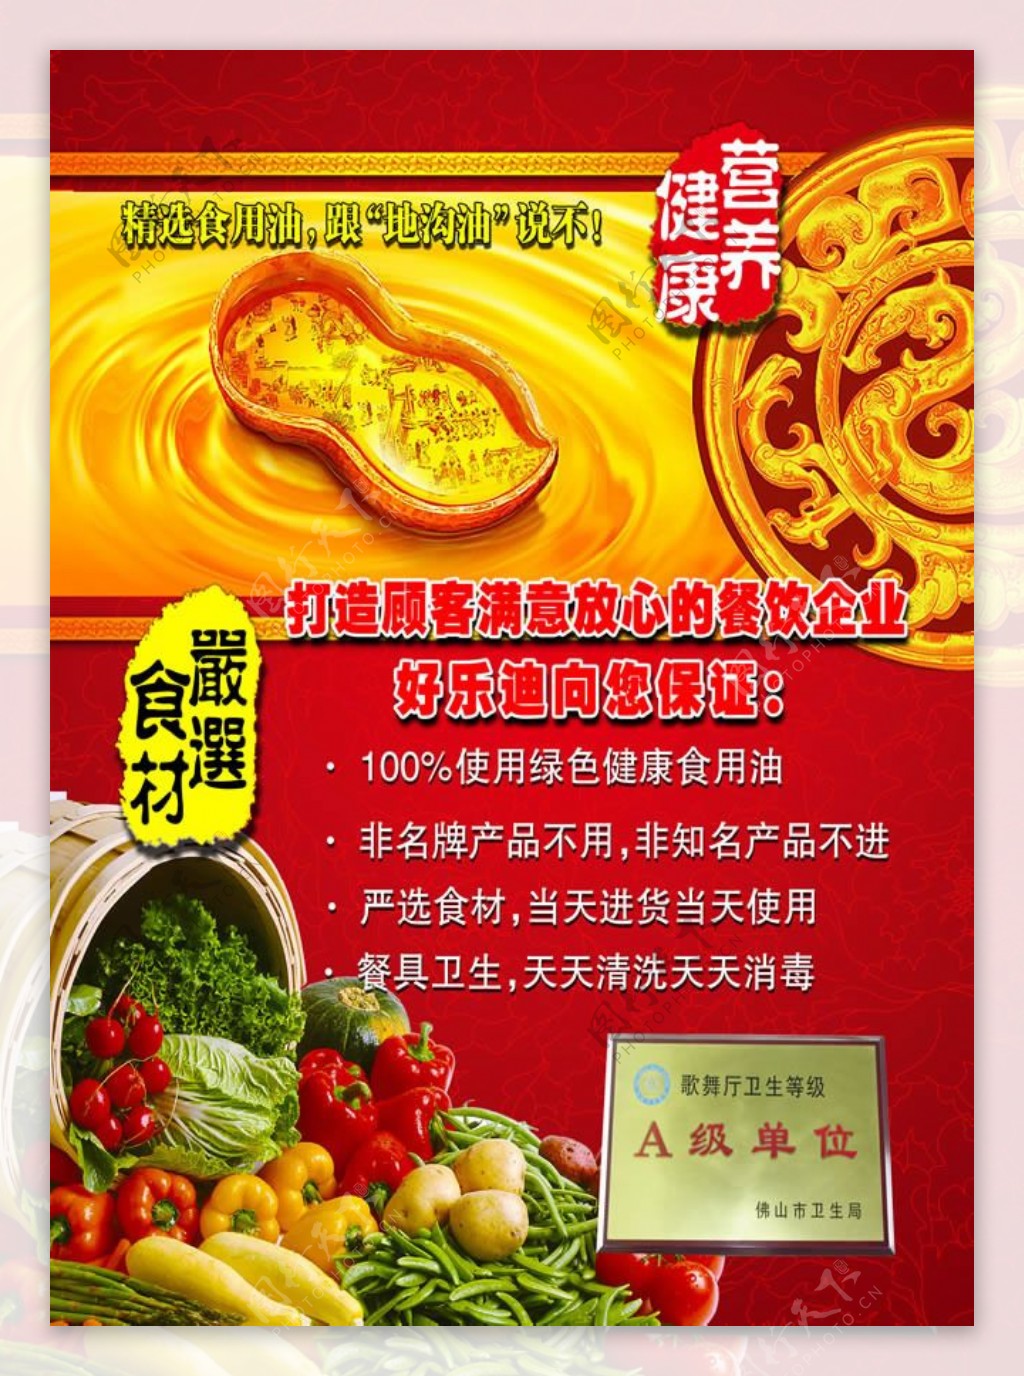 安全食品宣传海报PSD素材